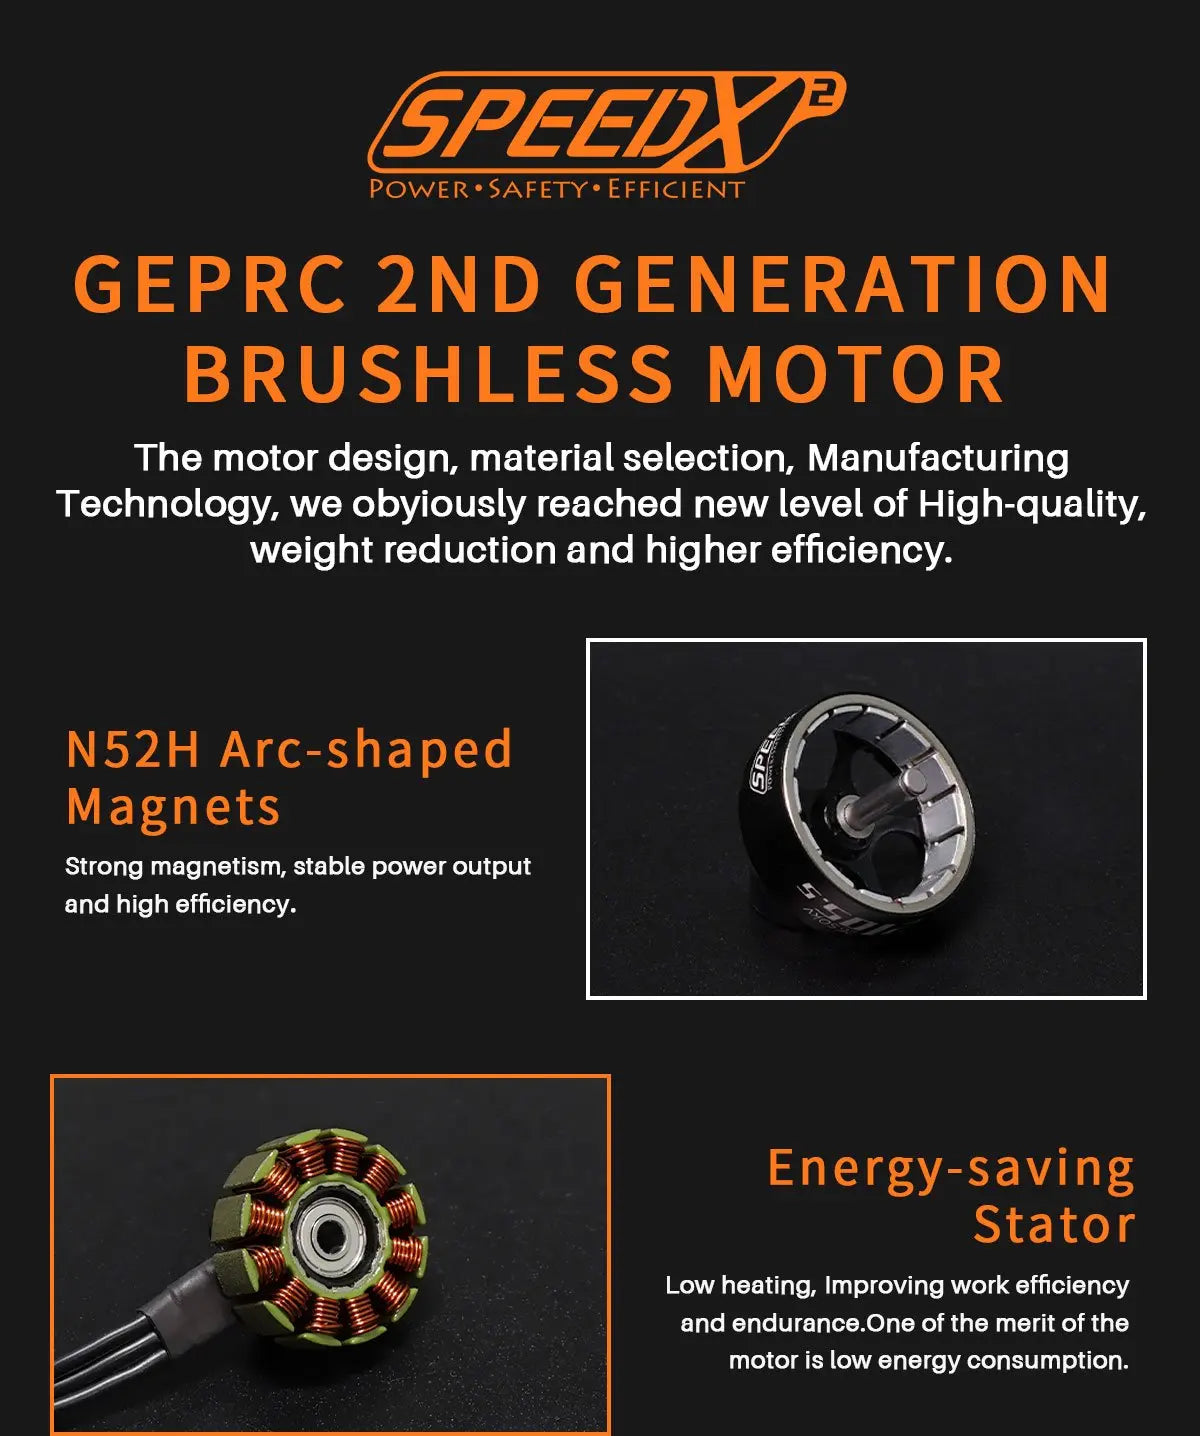 GEPRC SPEEDX2 0803 Brushless Motor, GEPRC 2ND GENERATION BRUSHLESS MOTOR . high